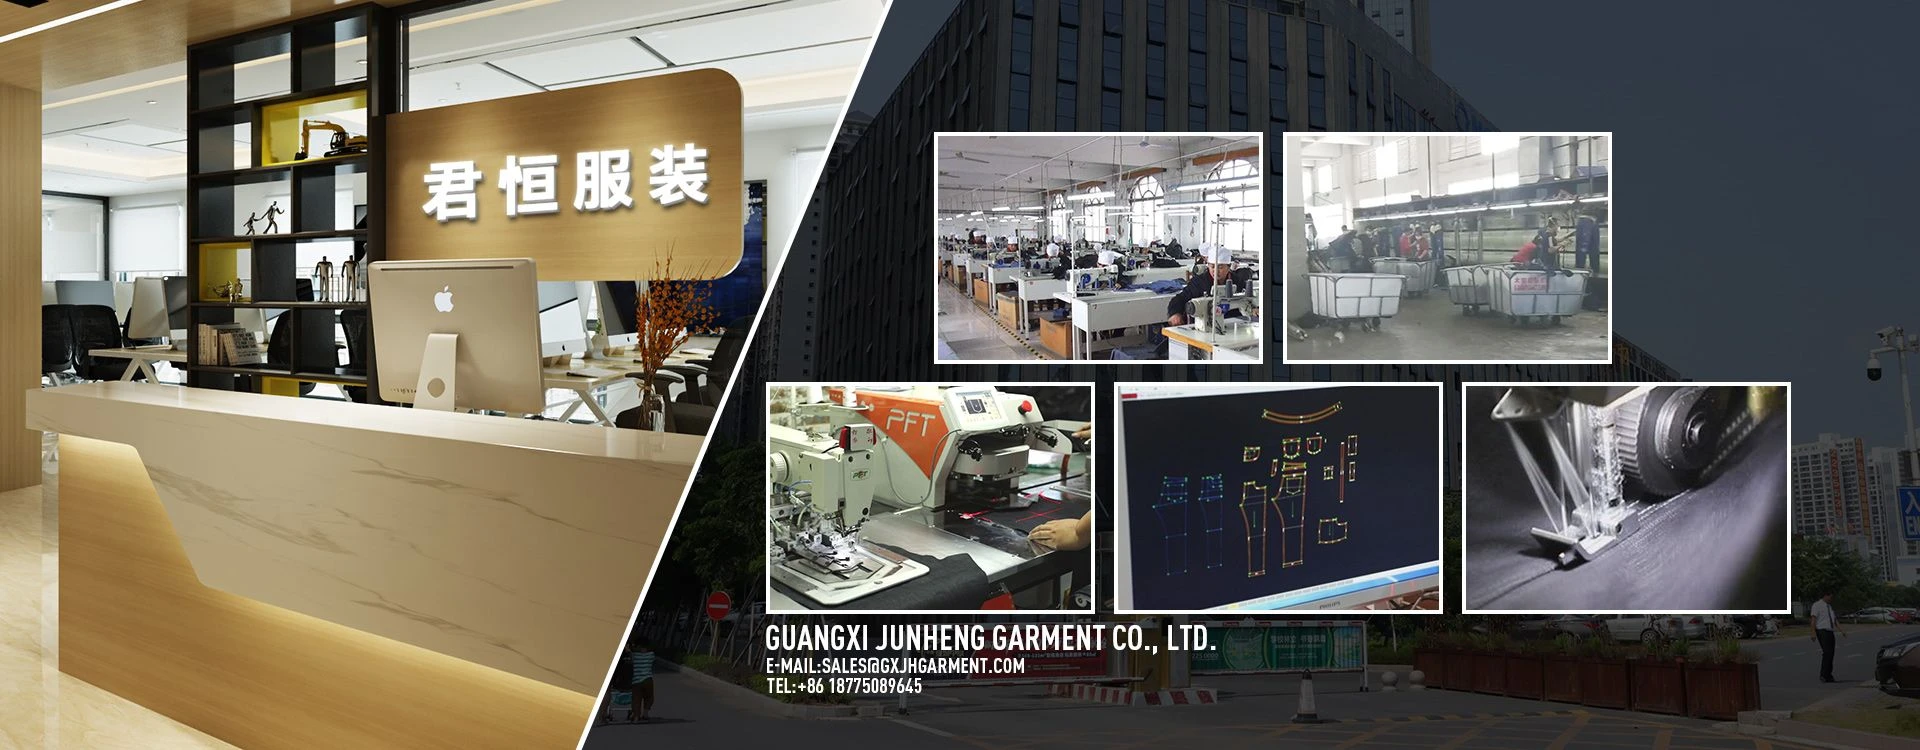 Guangxi Junheng Garment Co., Ltd